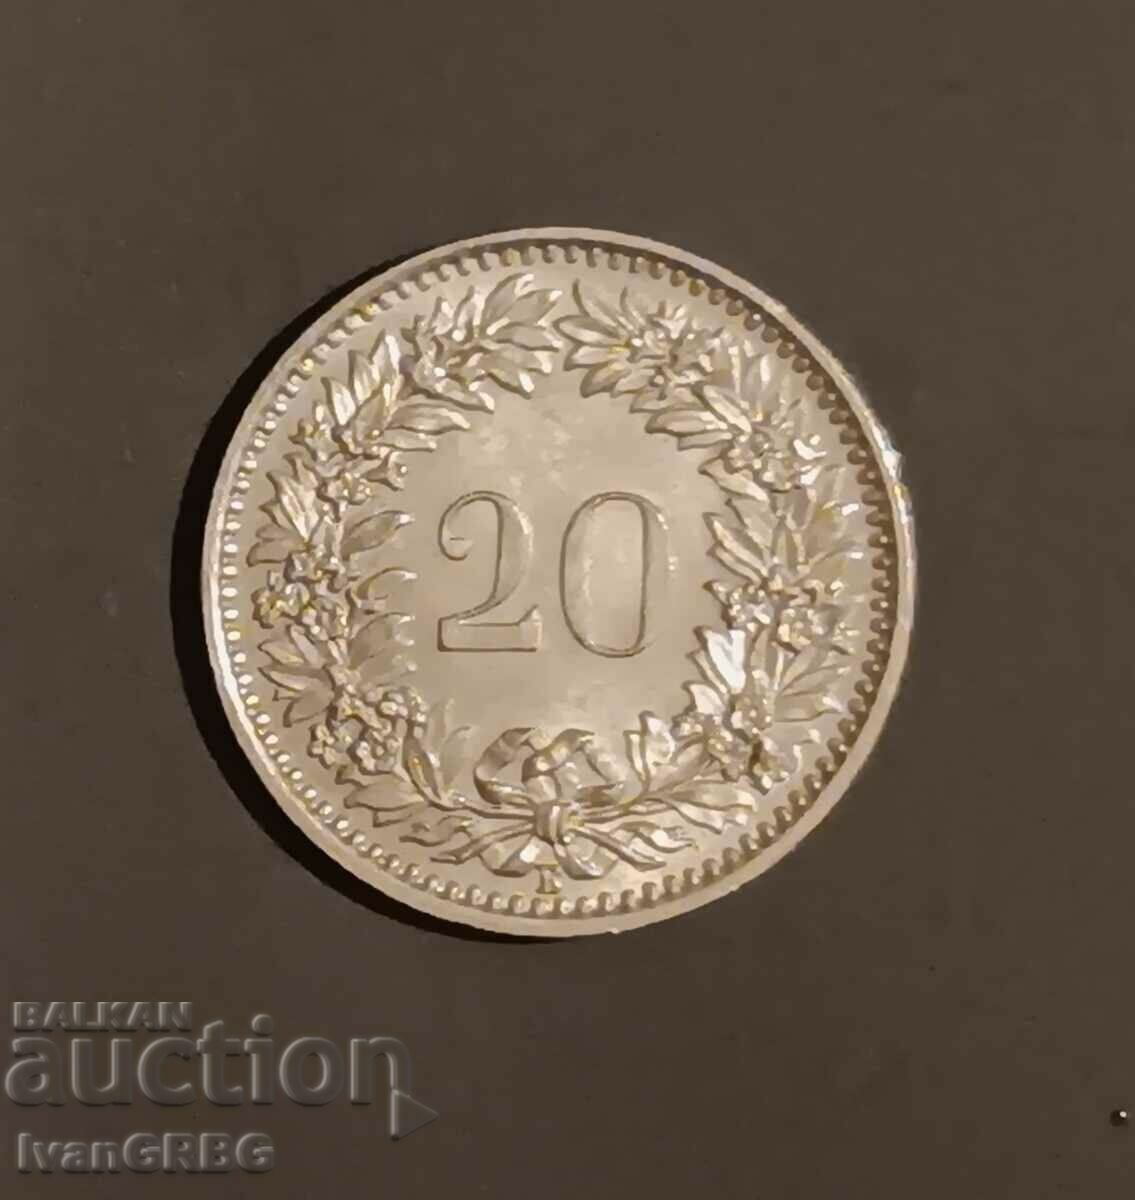 20 rapen 1964 Elveția, 20 centimes 1964 Elveția